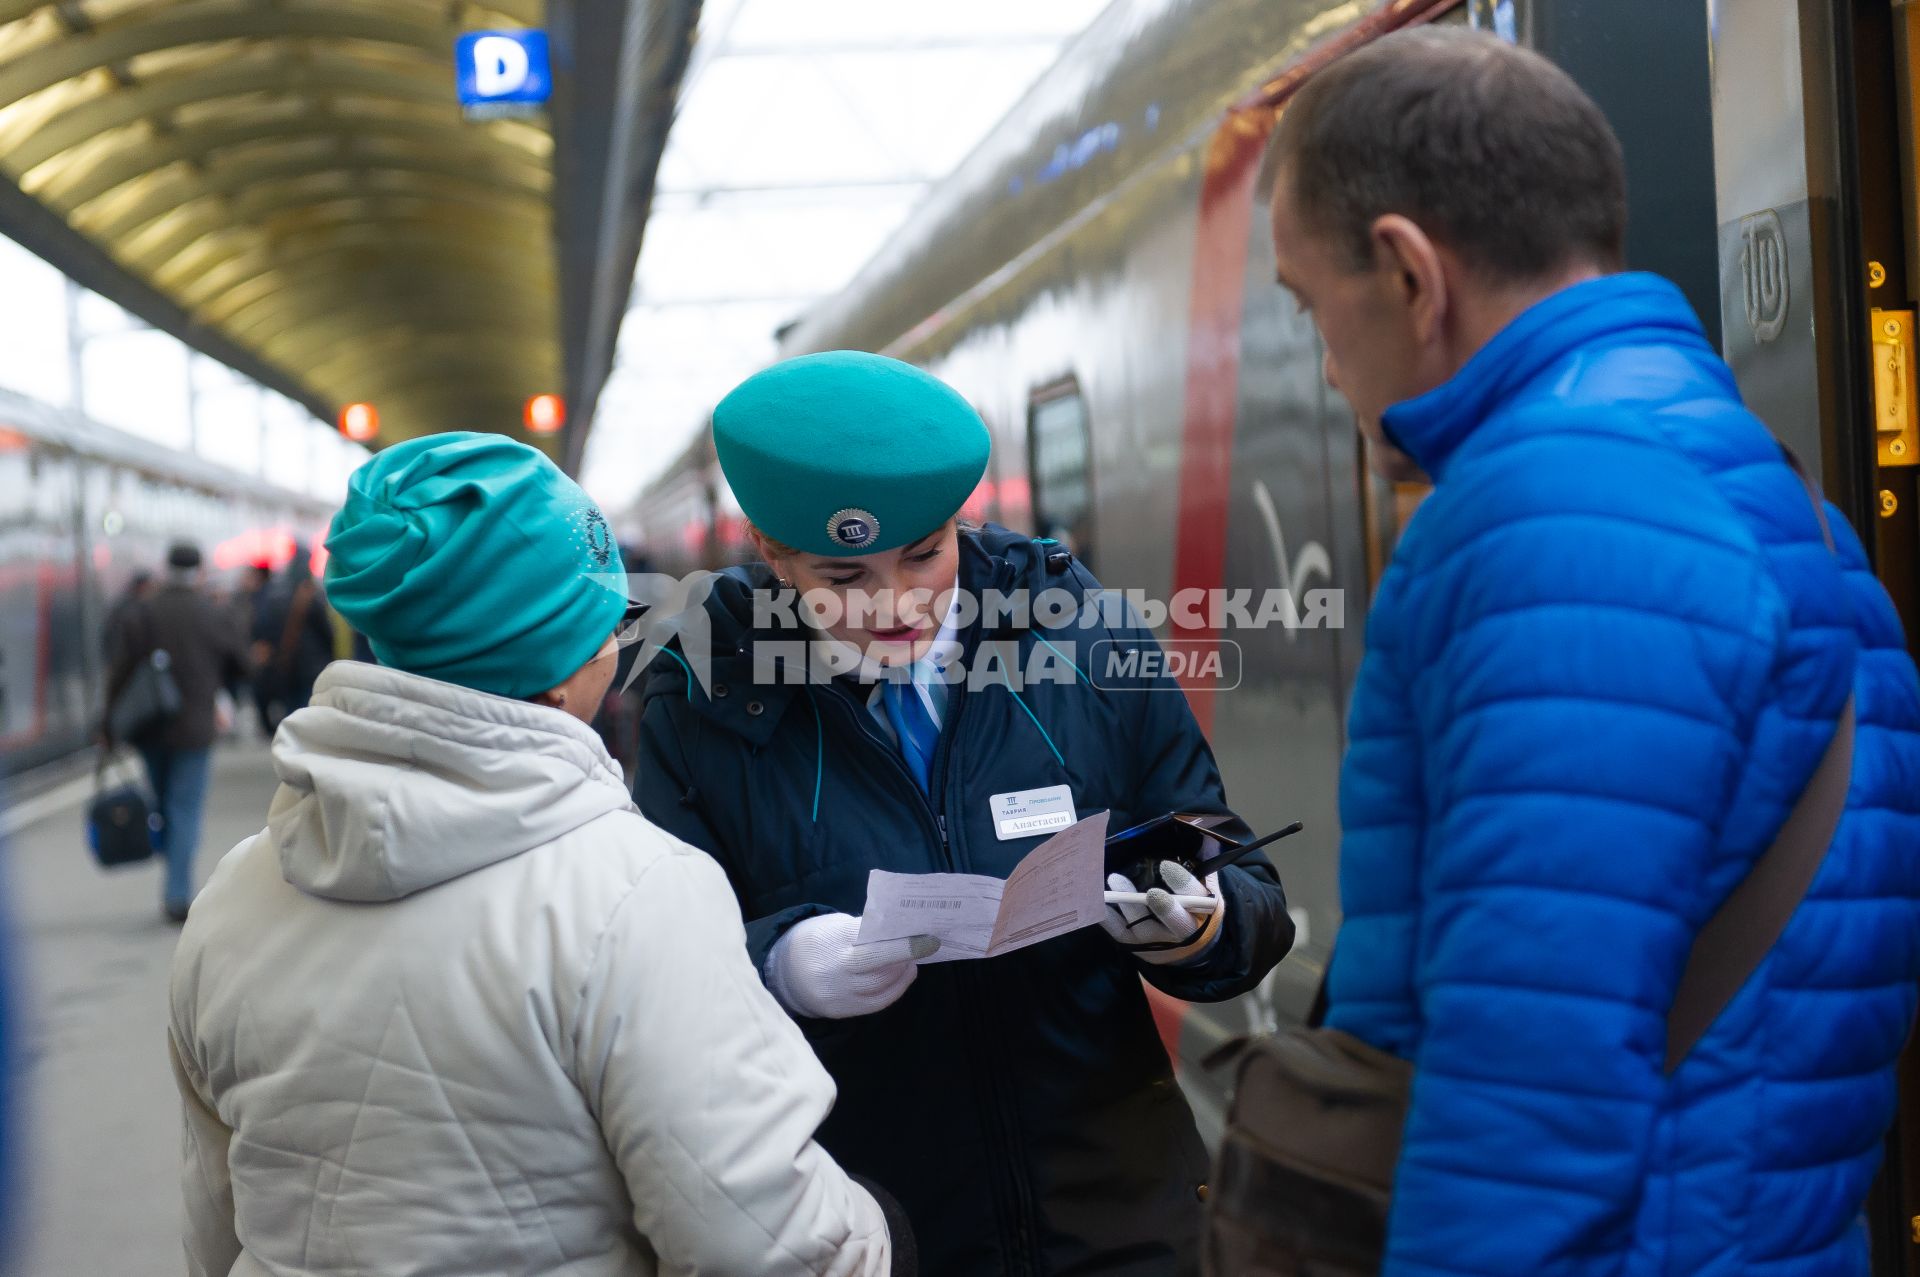 Санкт-Петербург. Пассажиры перед отправлением  первого пассажирского поезда из Санкт-Петербурга в Севастополь через Крымский мост.